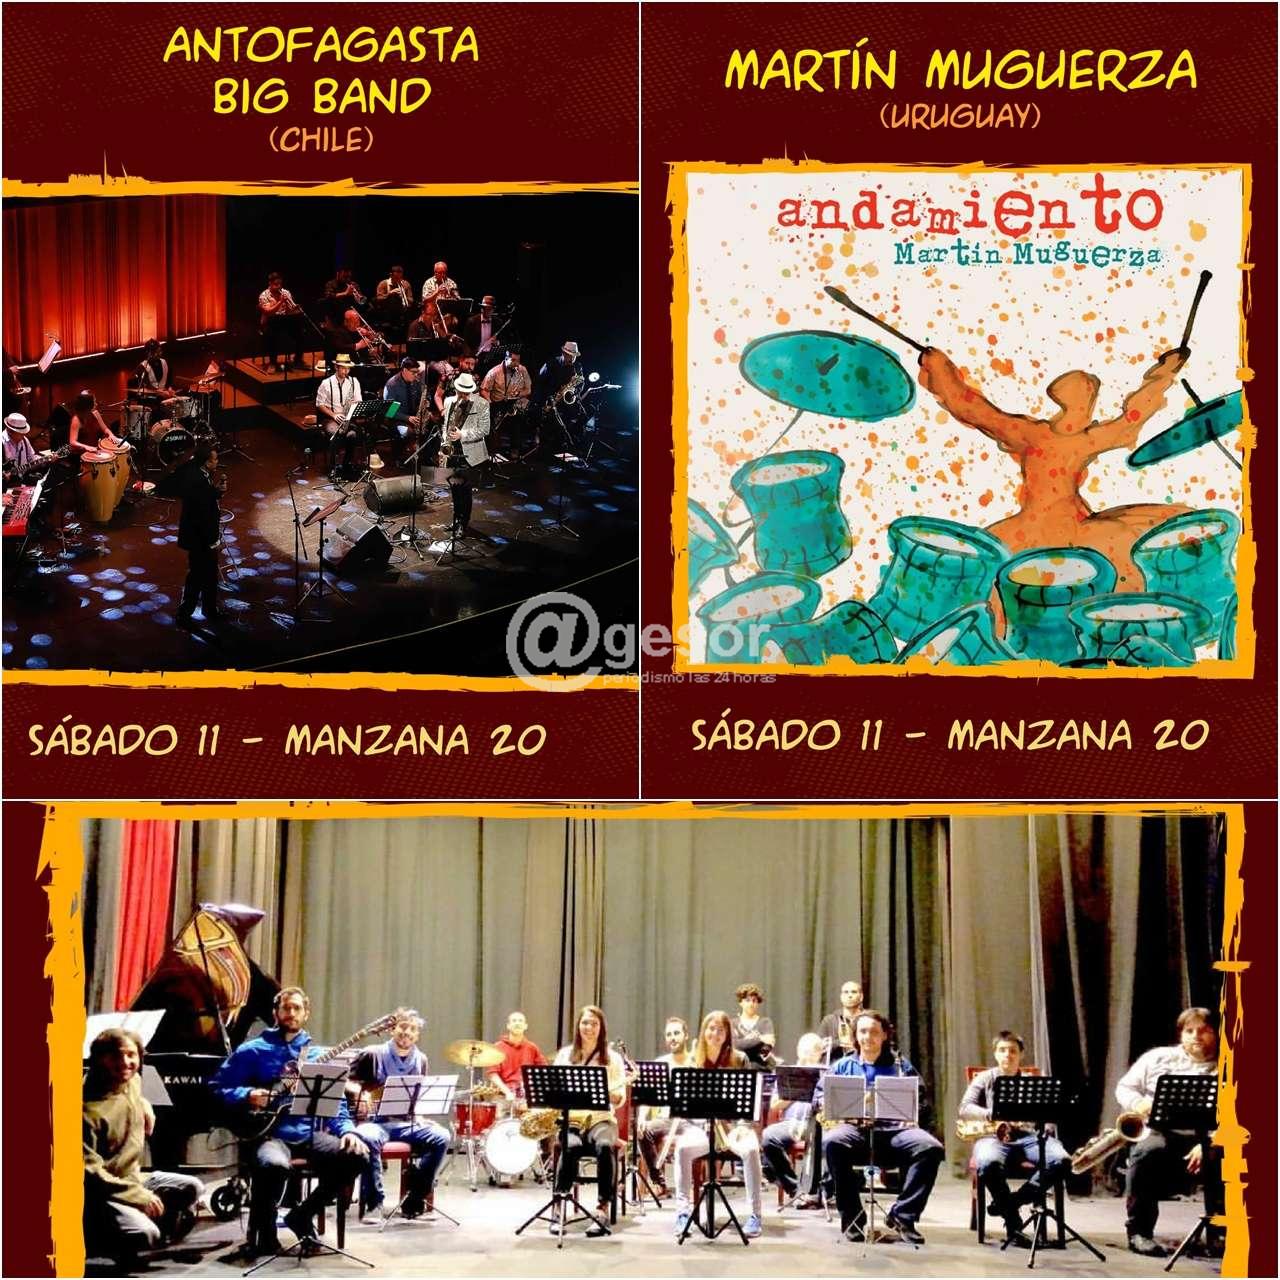 En el inicio del 13° Jazz a la Calle actuarán en el escenario de Manzana 20 Carricola Jazz Orchesta (Uruguay), Martin Muguerza (Uruguay) y The Antofagasta Big Band (Chile).